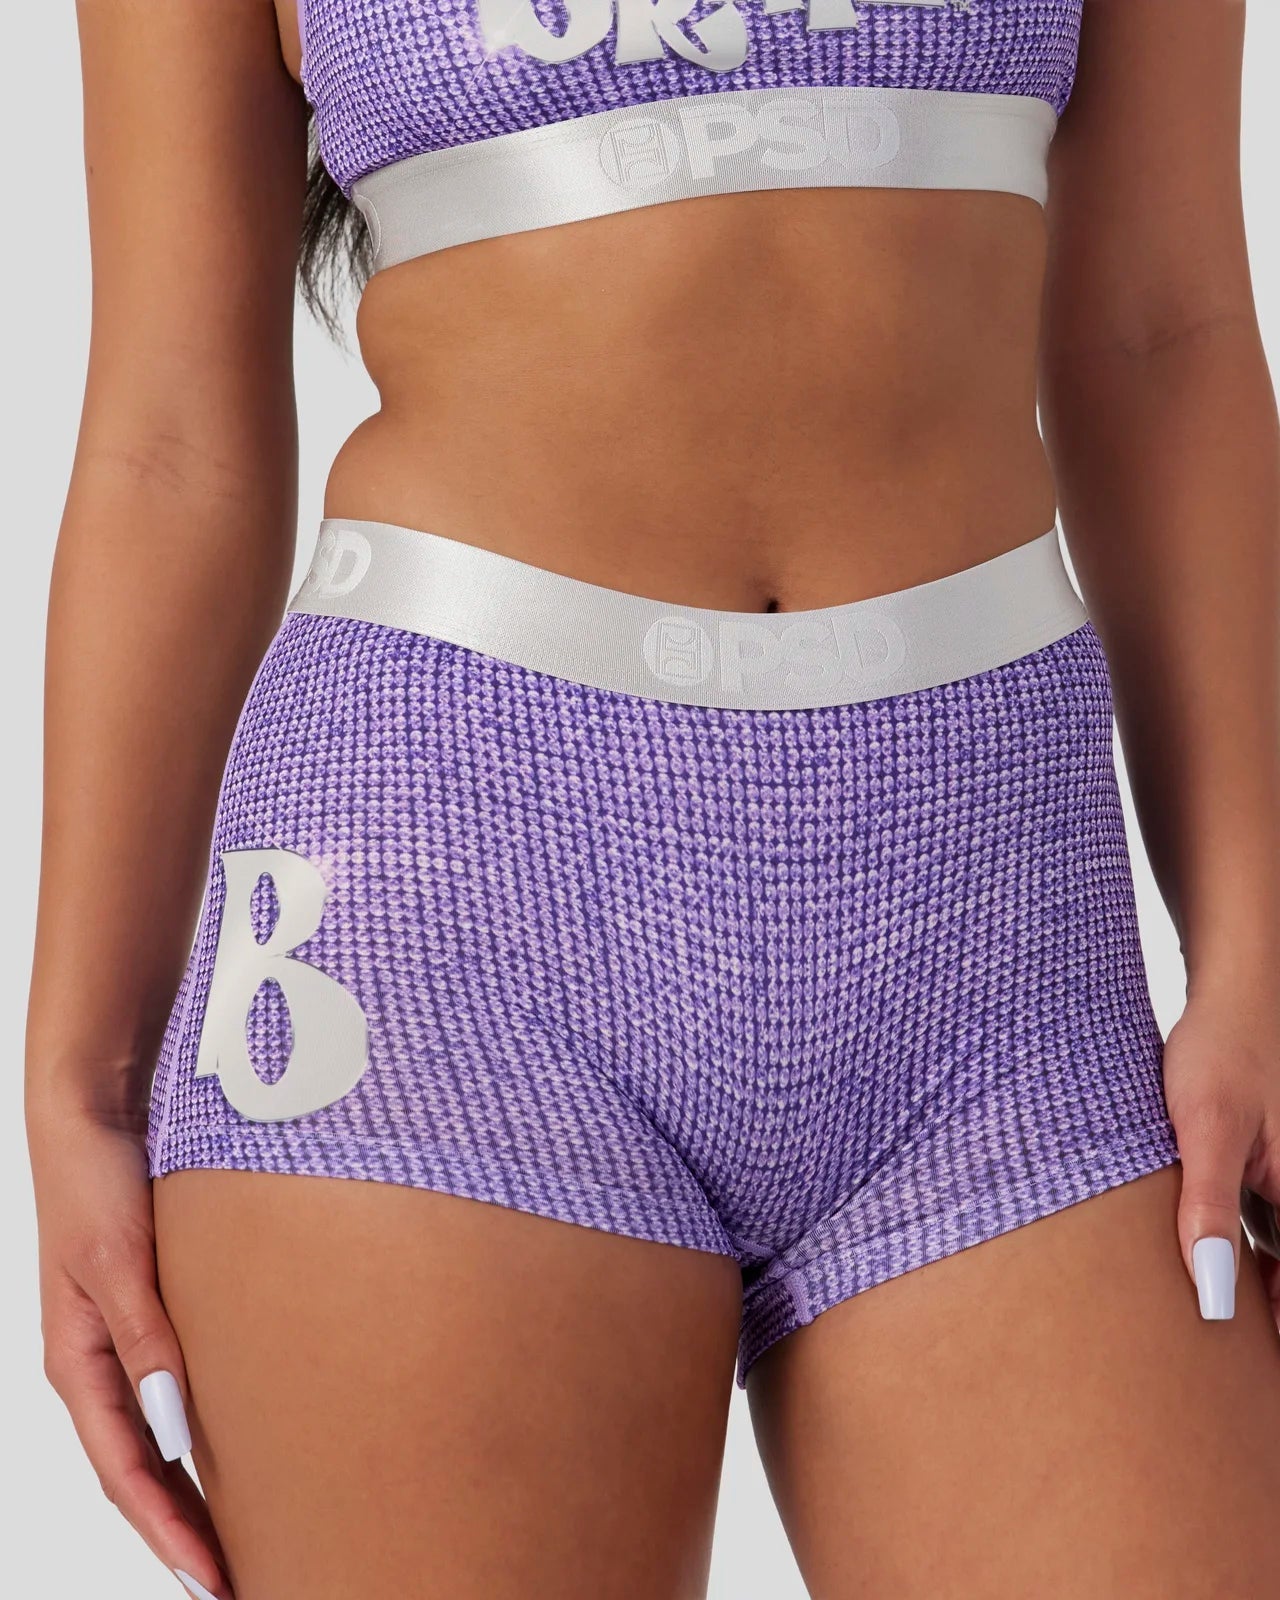 PSD WOMENS BRATZ Billz Purple Sports Bra Purple $41.65 - PicClick AU